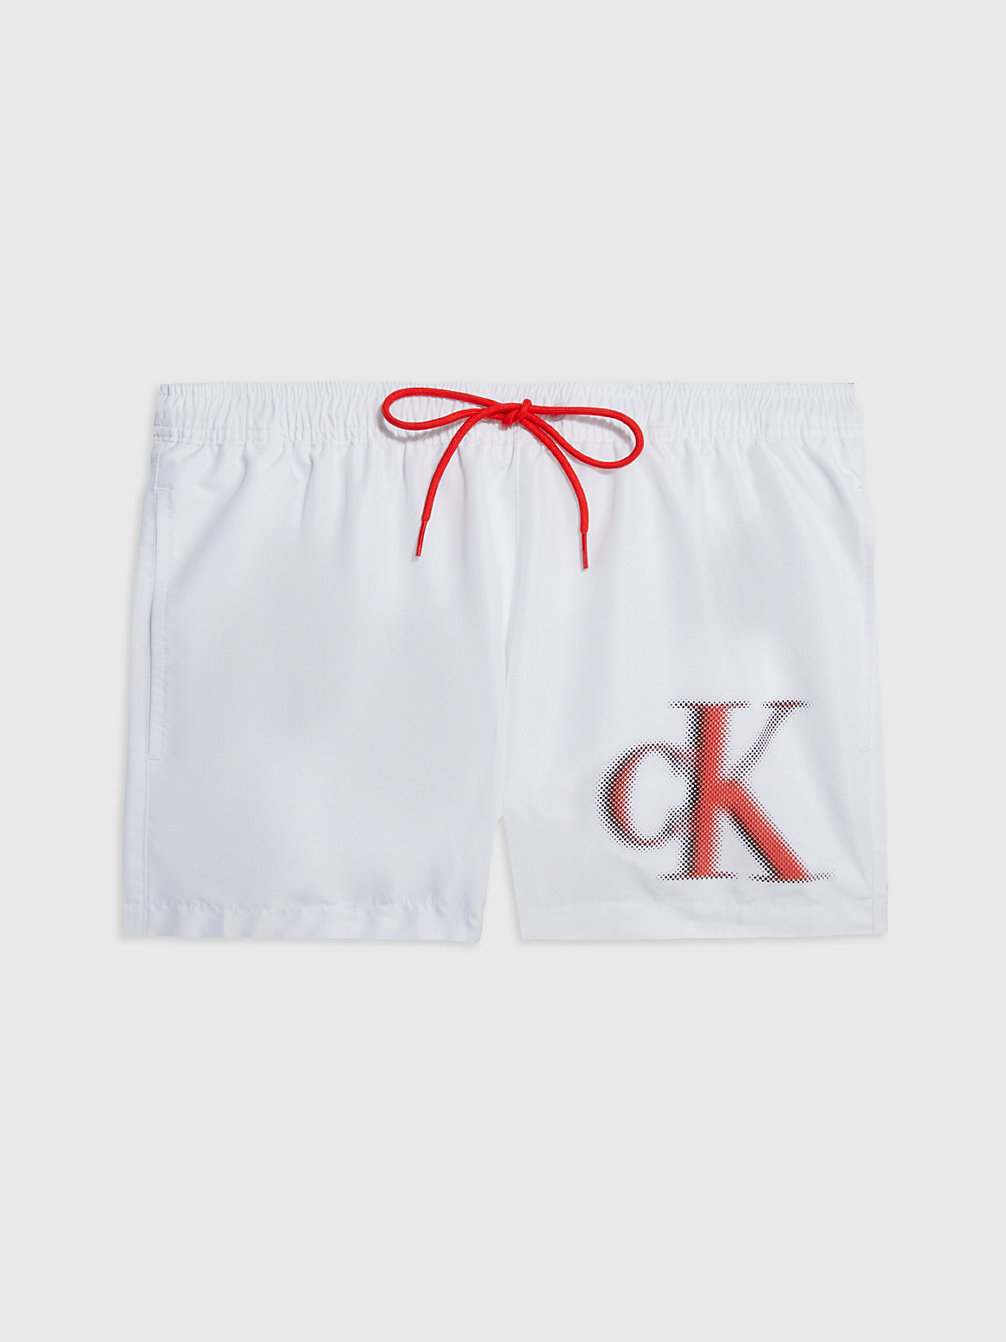 PVH CLASSIC WHITE > Kurze Badeshorts Mit Kordelzug – CK One > undefined Herren - Calvin Klein